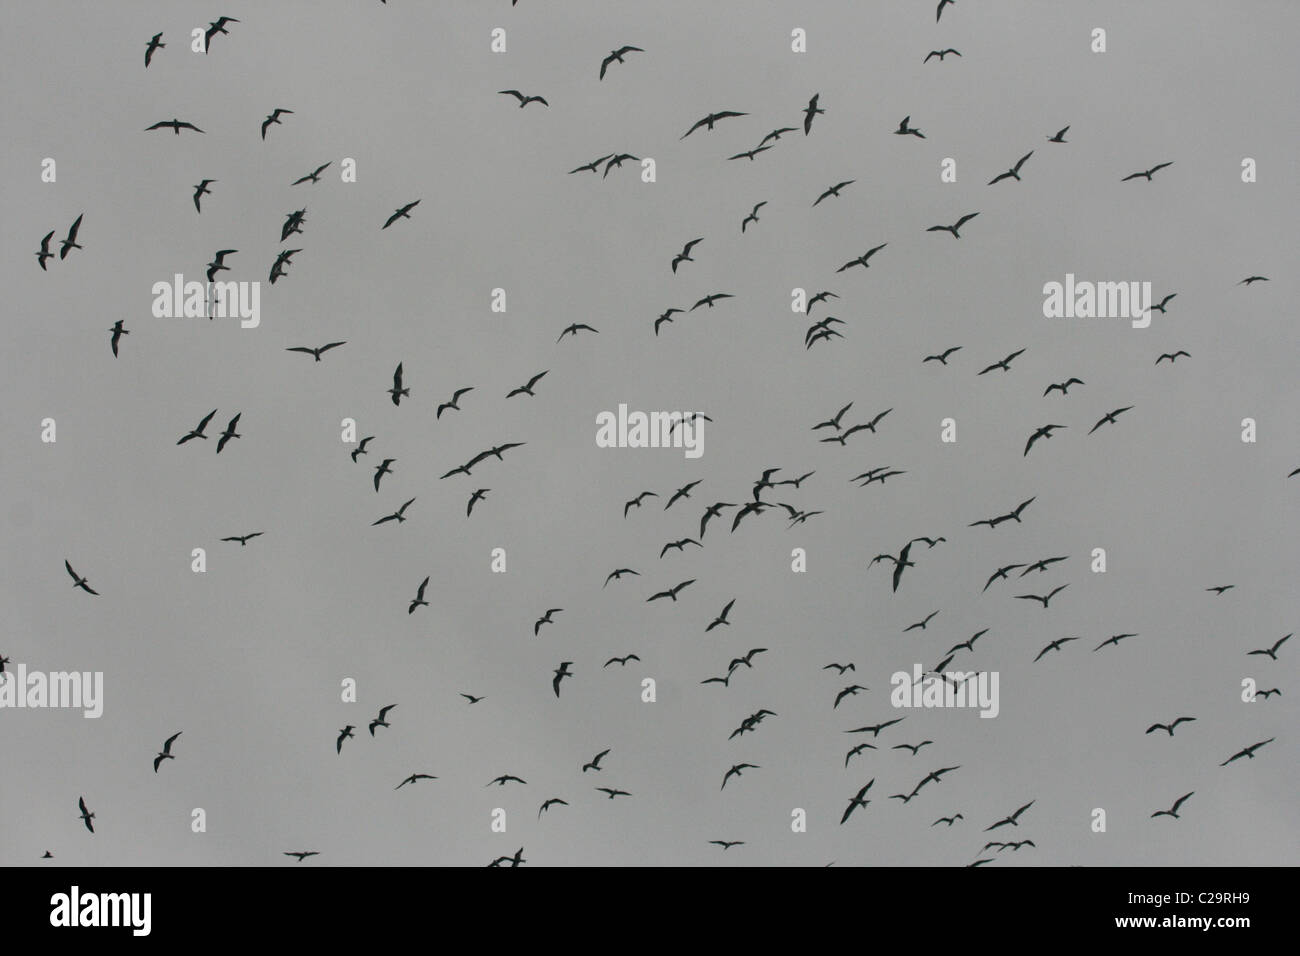 A flock of birds in the sky over Uganda Stock Photo